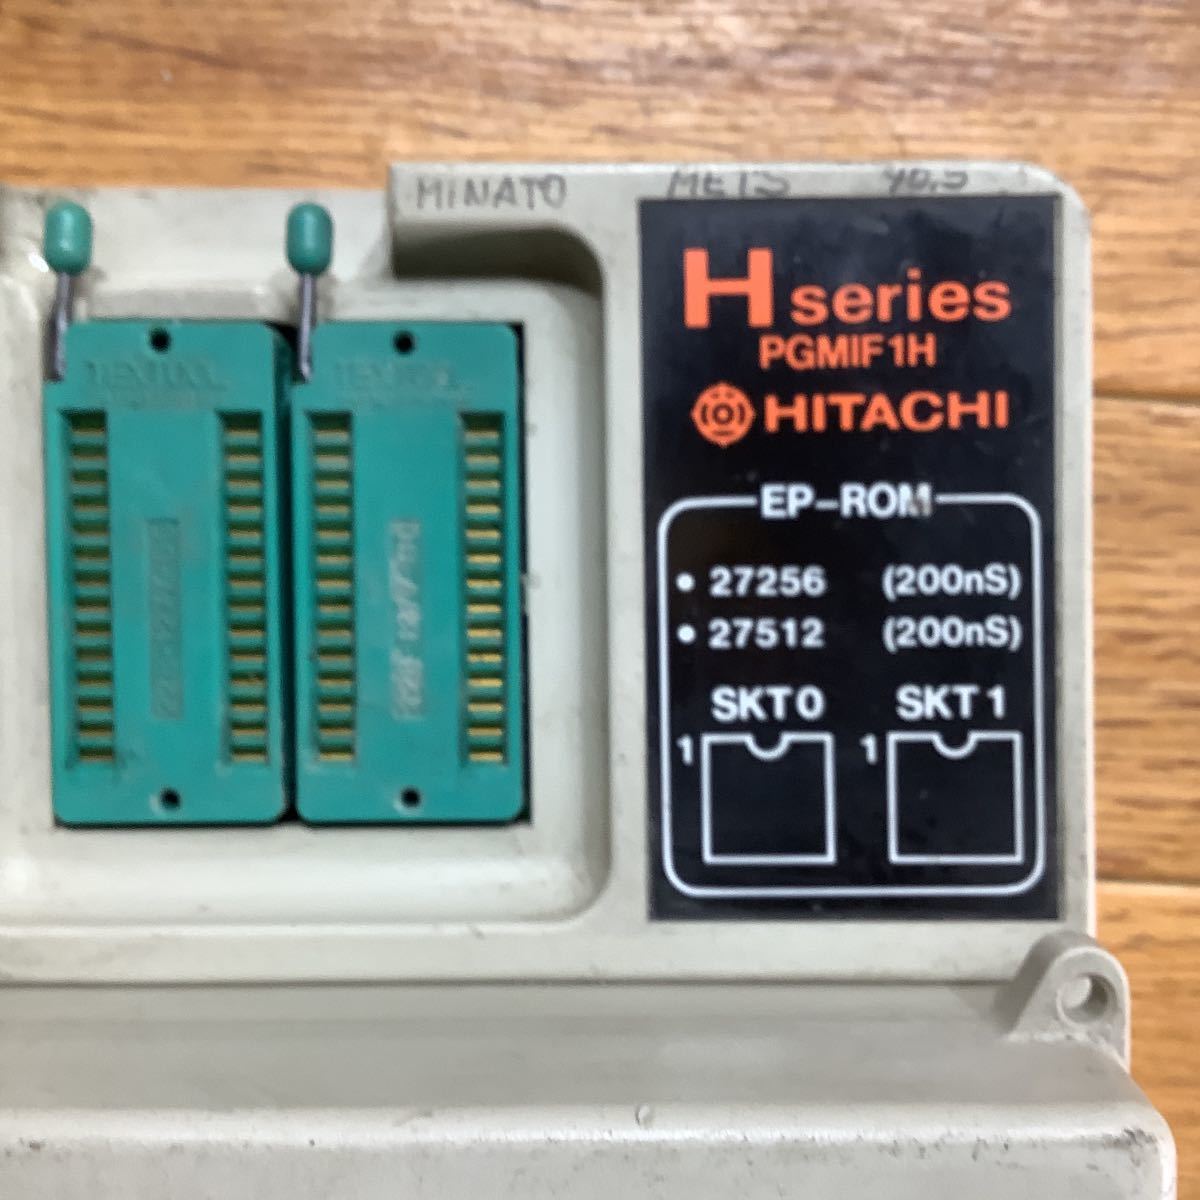  Showa Retro Hitachi производства секвенсор. ром зажигалка в это время. старый оборудование нет поэтому работоспособность не проверялась Junk 